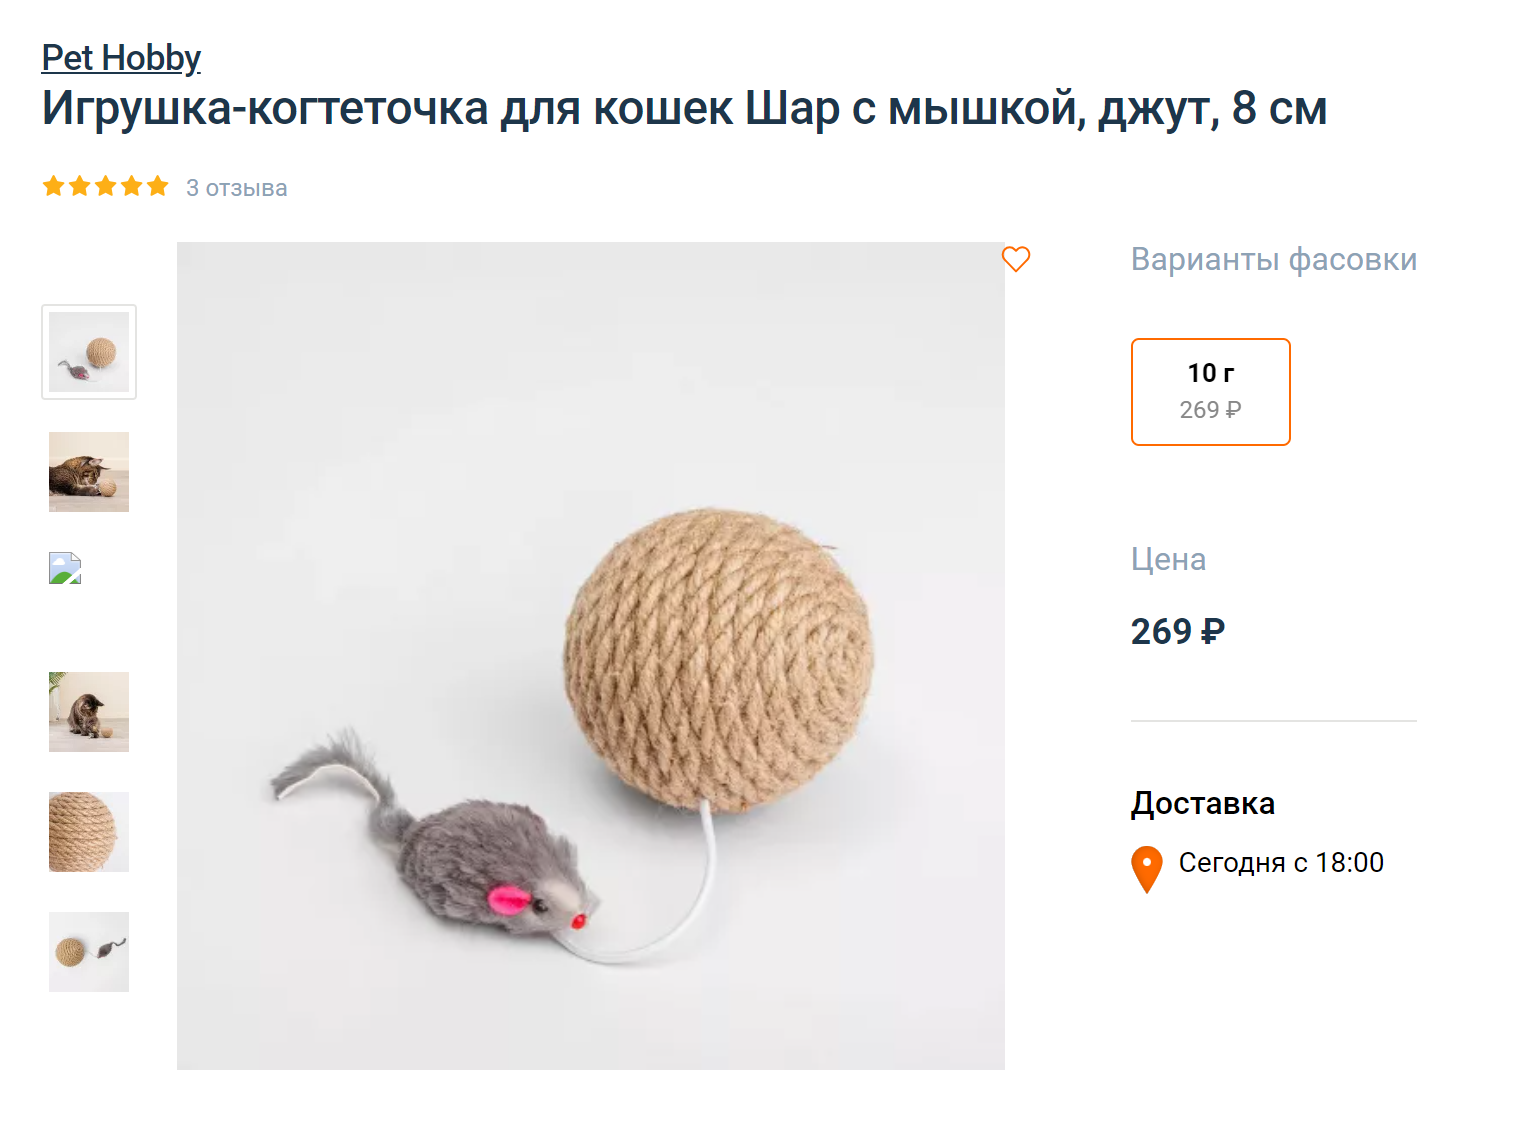 Игрушка-комбо — шар, мышка и маленькая когтеточка. Когда котик поддевает лапой такую игрушку, мышка двигается и вызывает еще больше интереса. Источник: 4lapy.ru